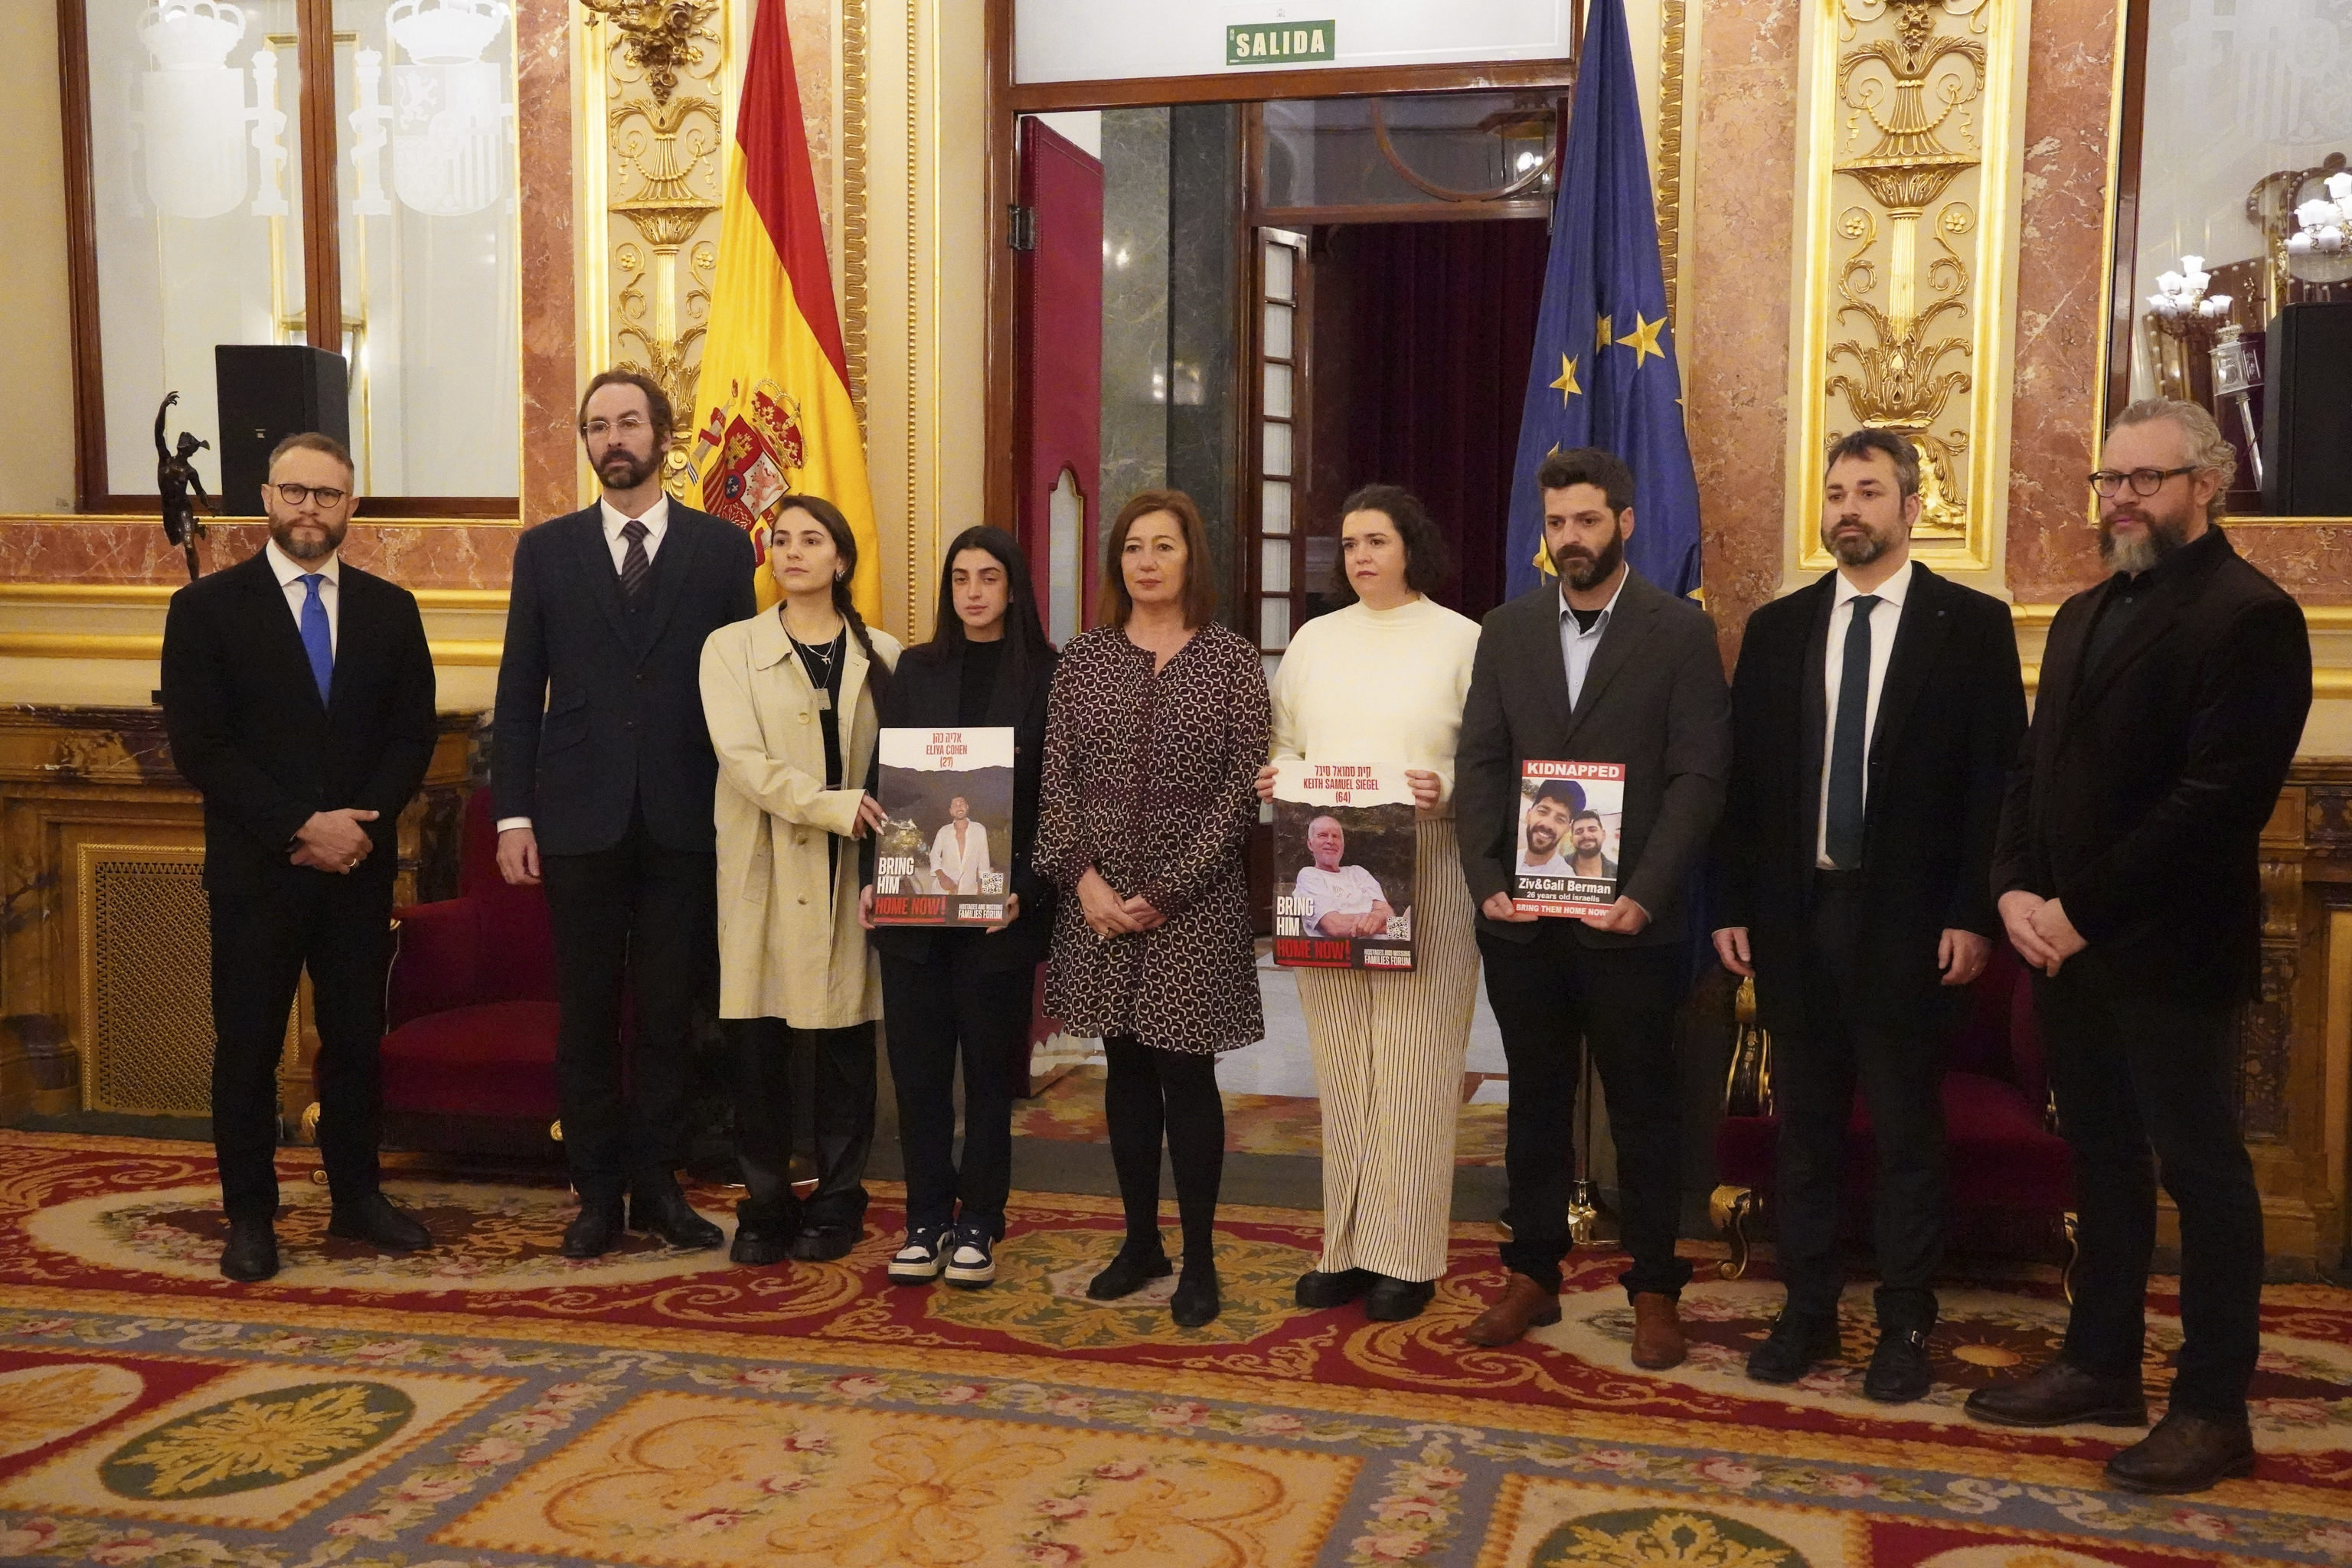 Familiares de rehenes israelíes de visita en España: «Exijo a Netanyahu que los traiga a casa»